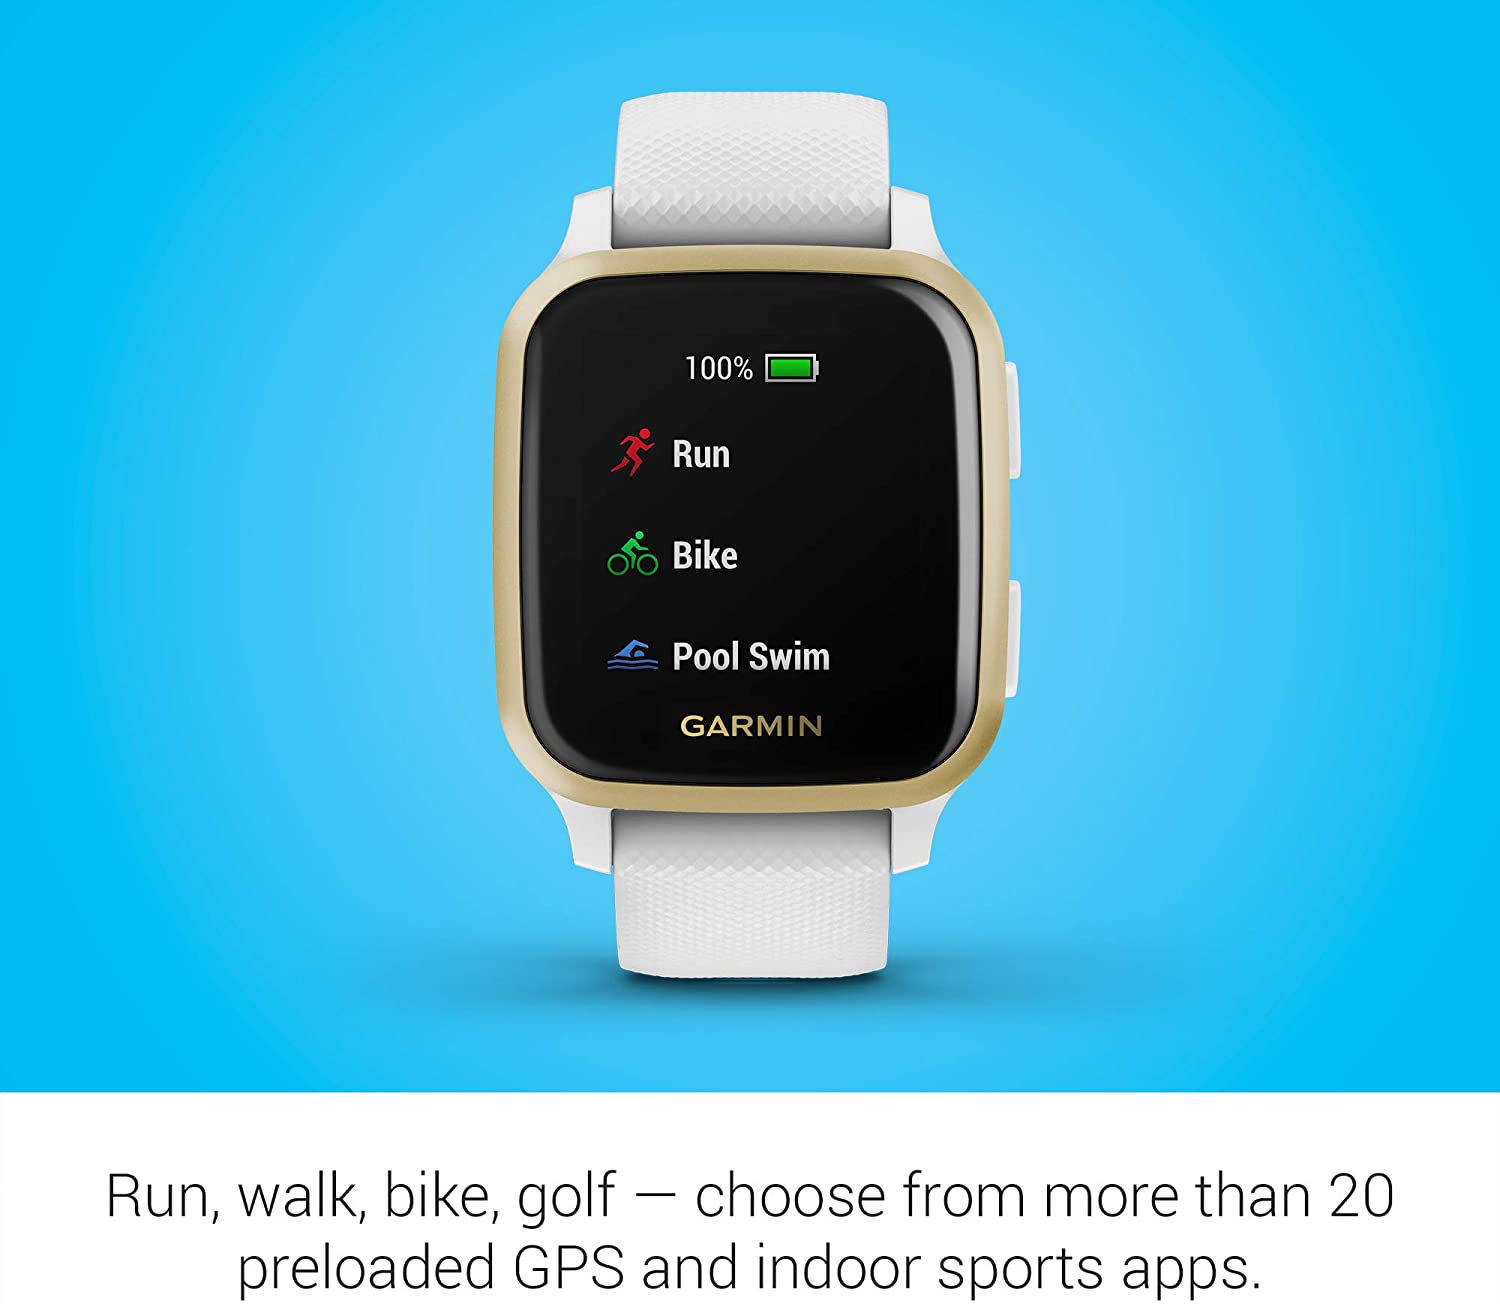 Garmin Venu Sq, Smartwatch GPS Sport con Monitoraggio della Salute e Garmin Pay, Bianco (Bianco/Oro)